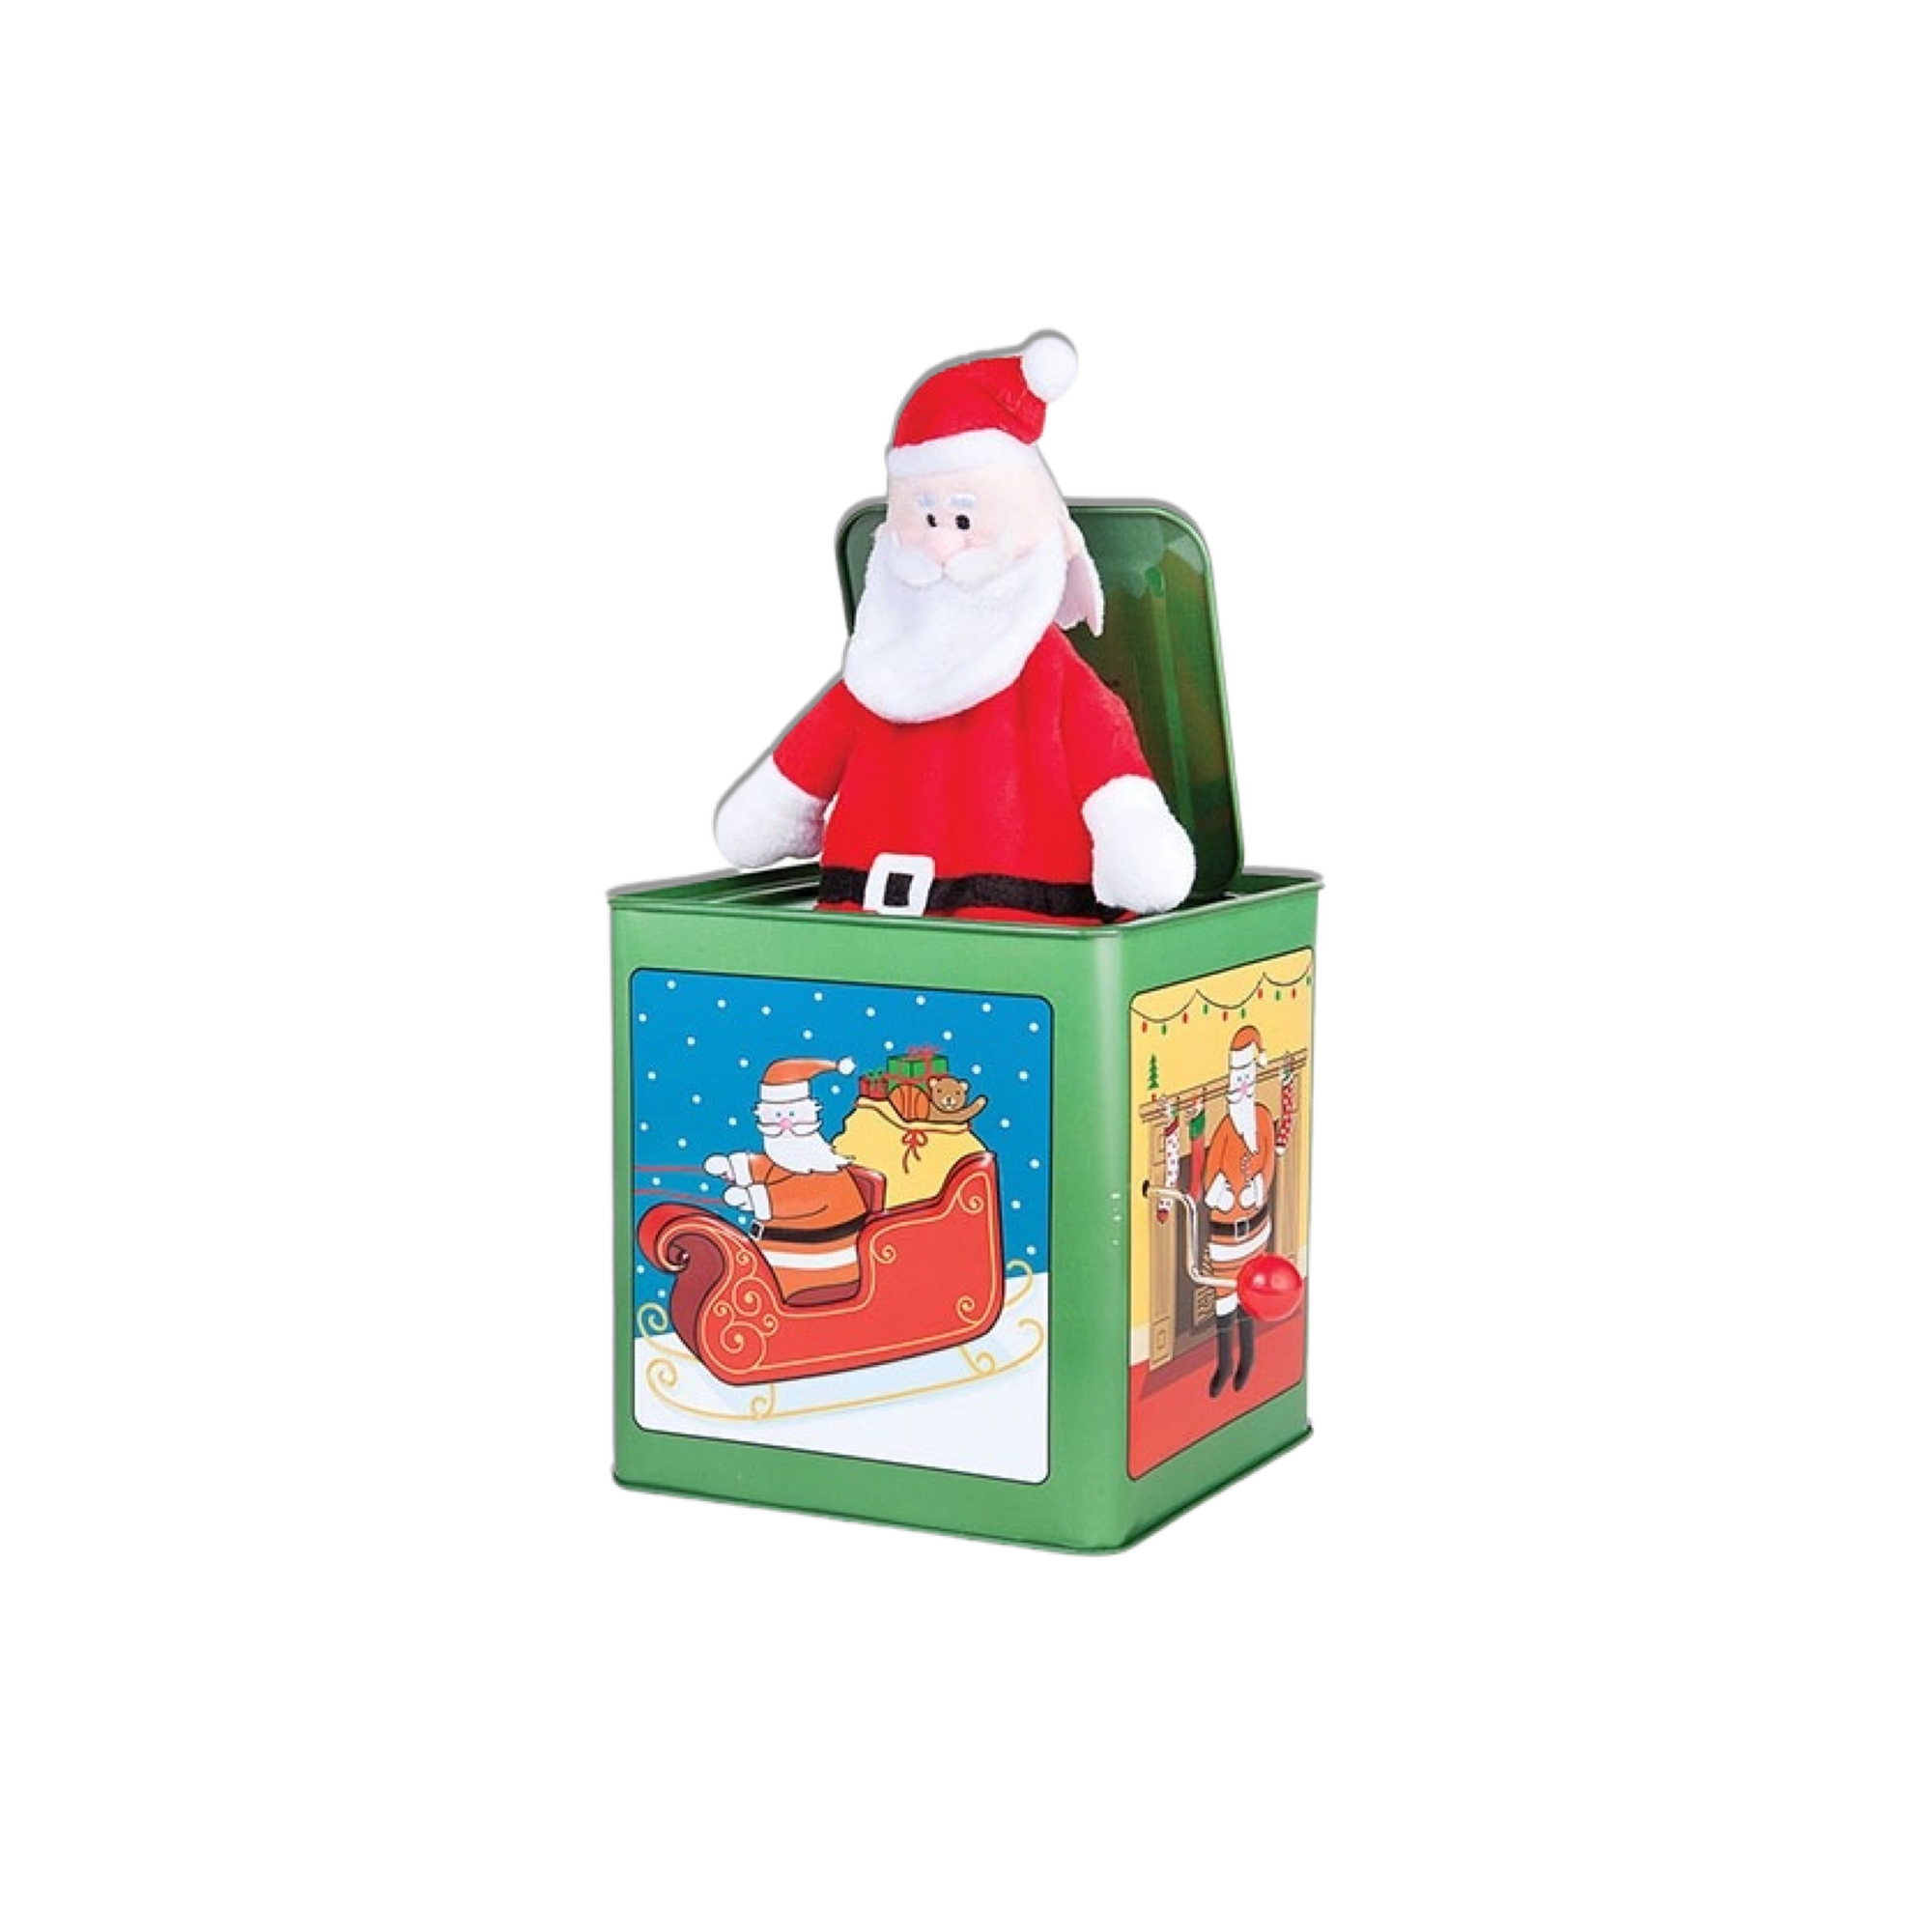 Santa Jack-In-The-Box